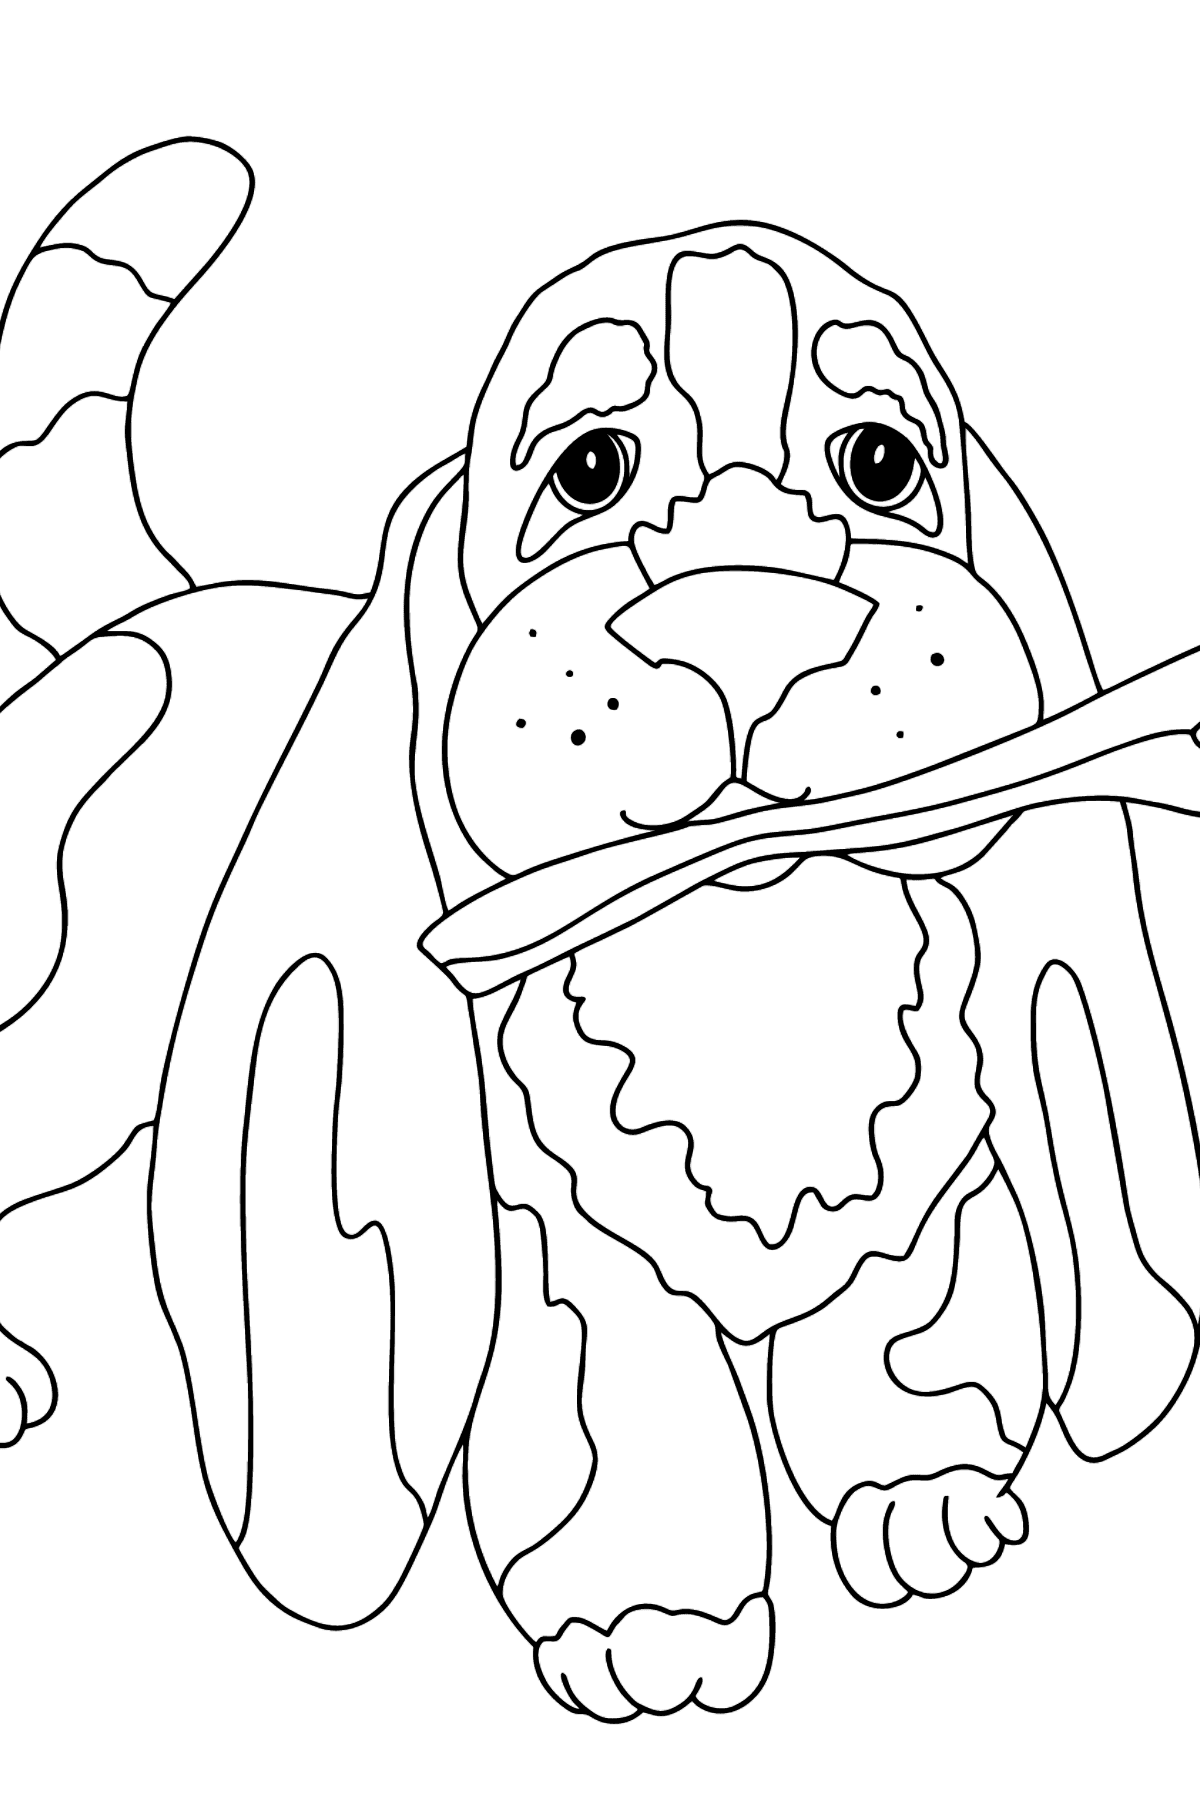 Desenho de cachorro e osso para colorir (fácil) - Imagens para Colorir para Crianças